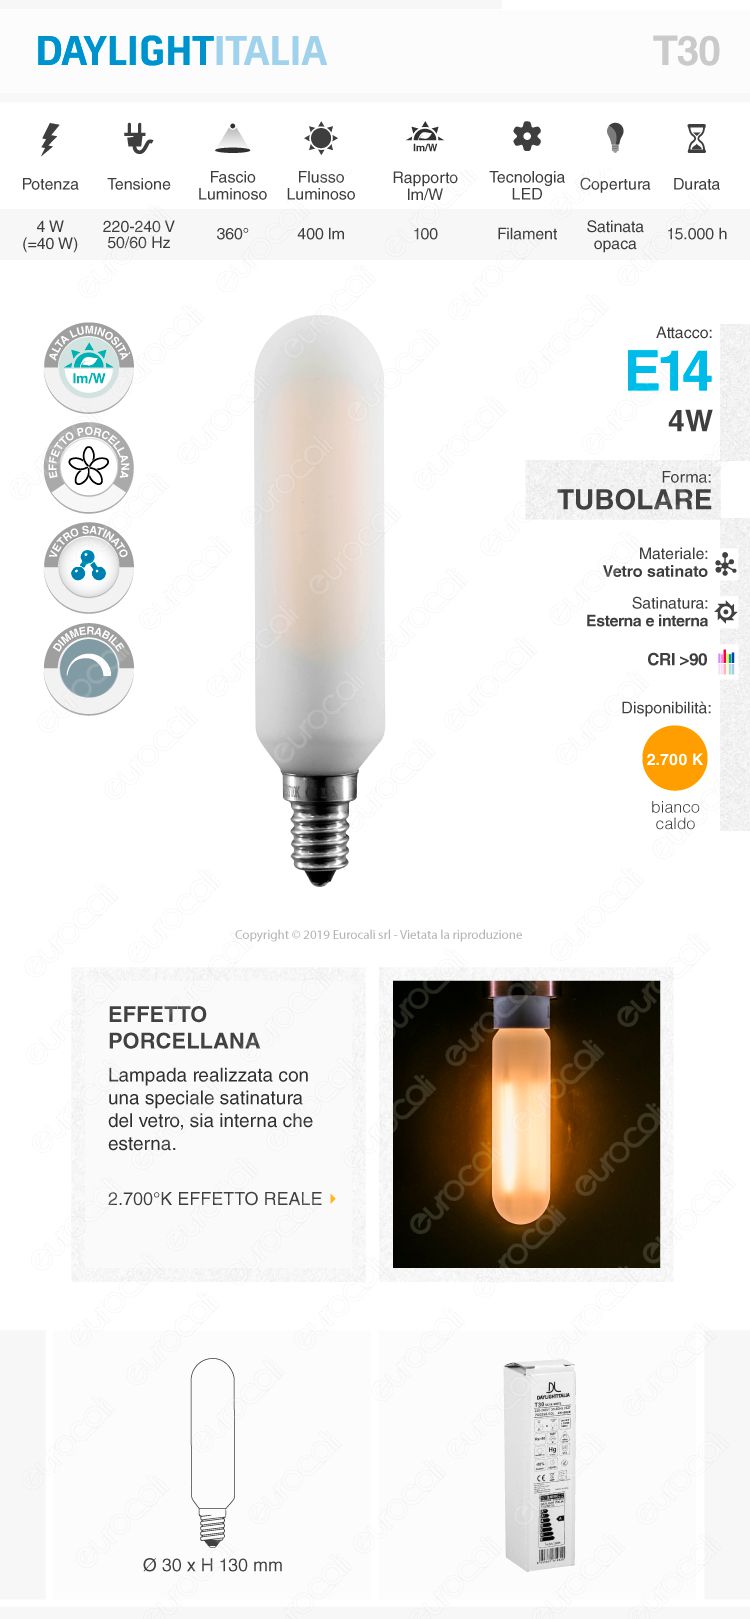 Daylight Lampadina E14 Tubolare T30 Filamento LED 4W Effetto Porcellana Dimmerabile CRI≥90